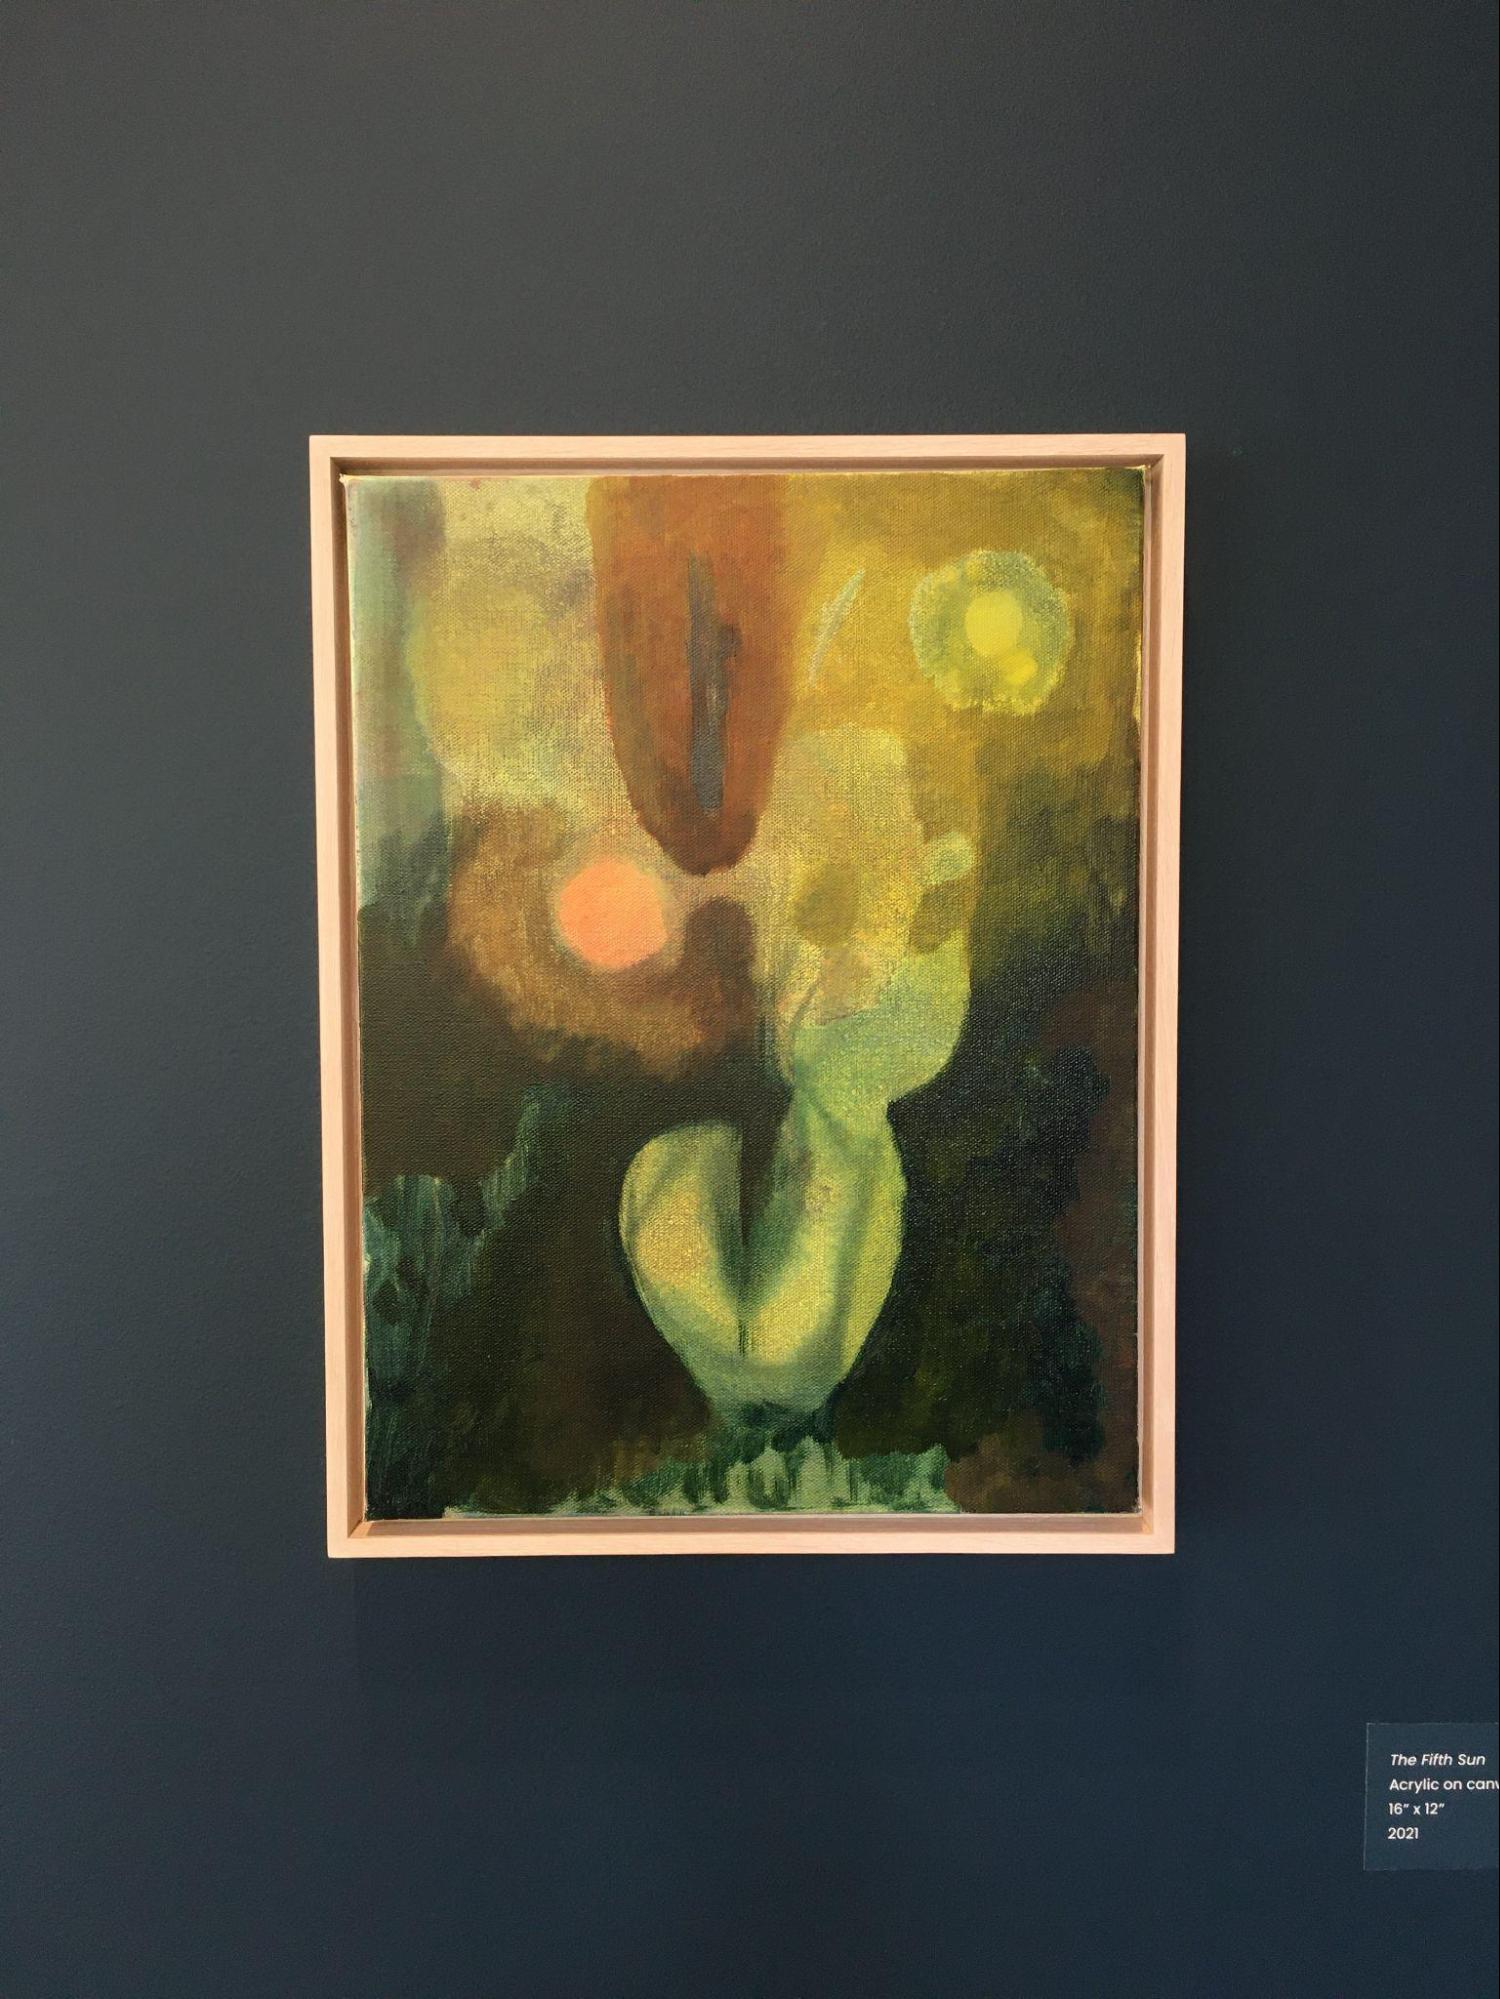 The Fifth Sun, Acrylic on canvas, 16” x 12”, 2021